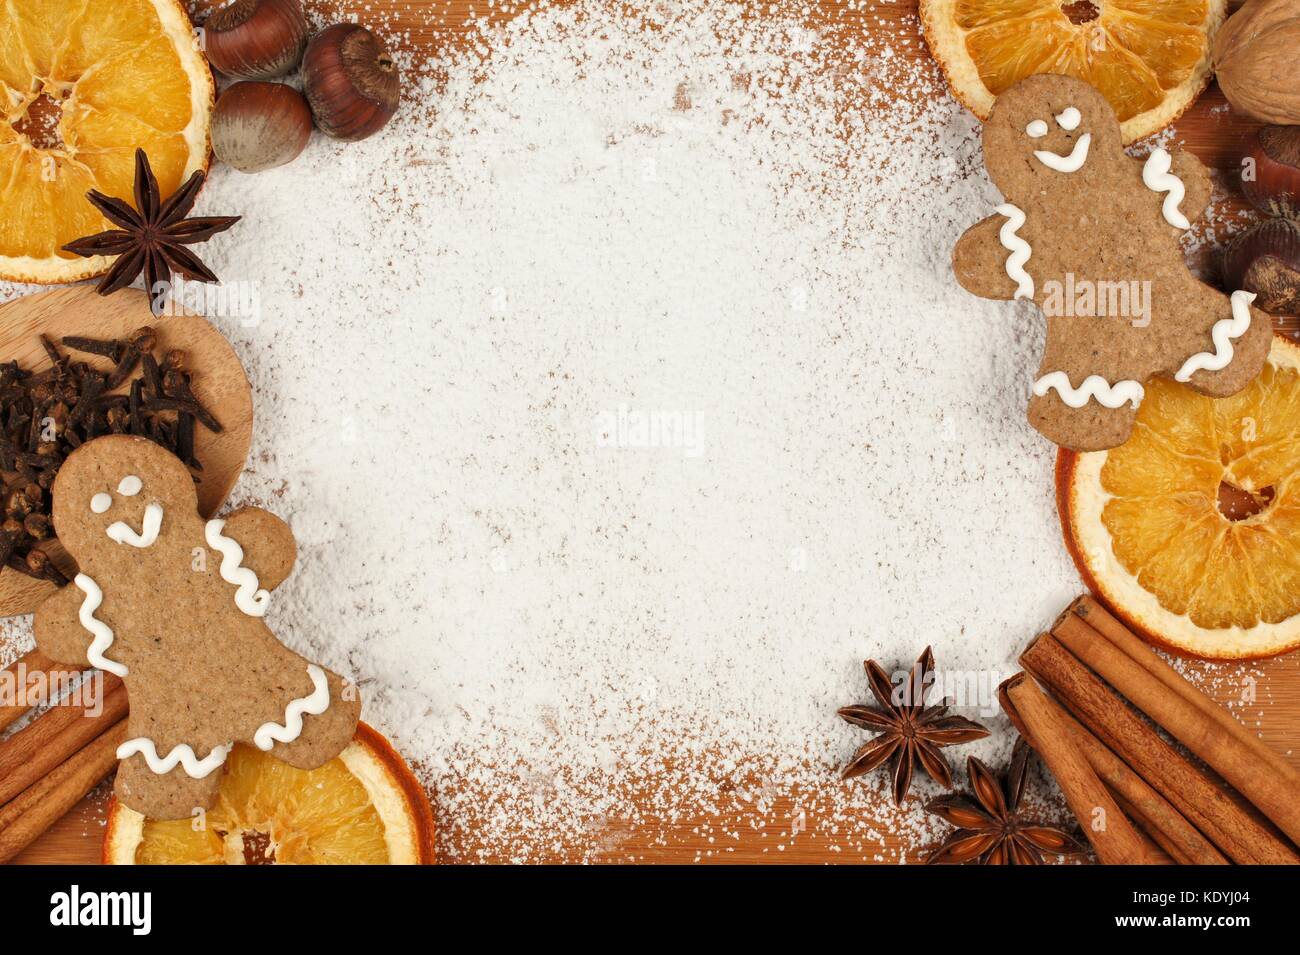 Vacanze a tema di cottura telaio con gli uomini di panpepato, i dadi e le spezie contro uno zucchero in polvere sullo sfondo Foto Stock